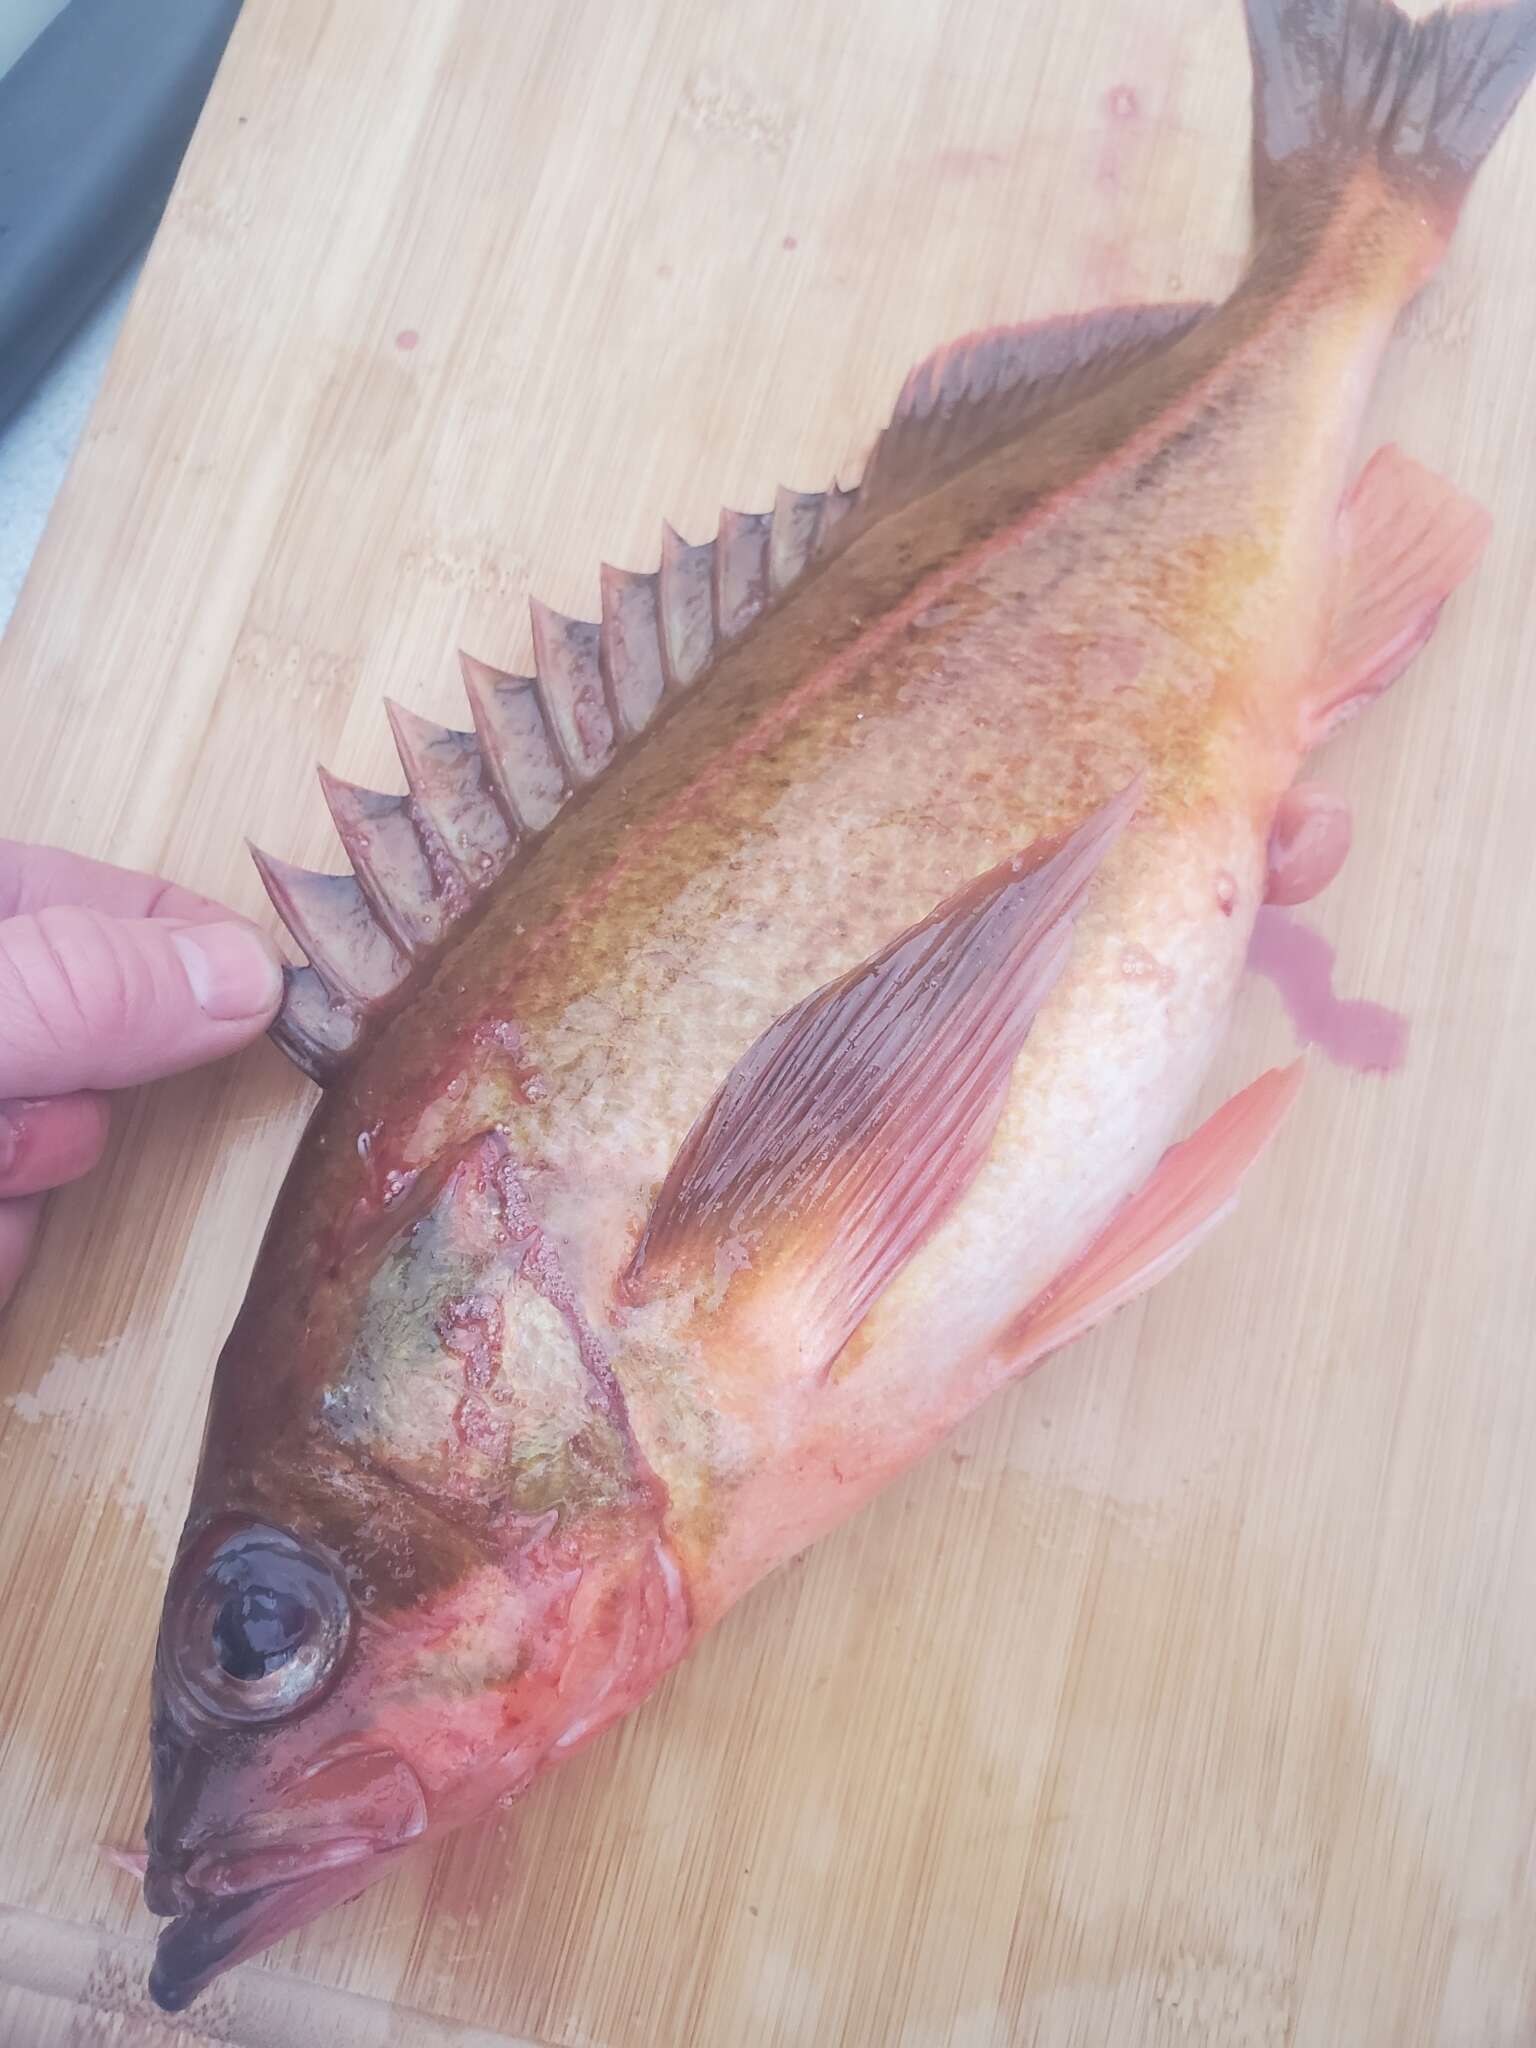 Image of Redstripe rockfish